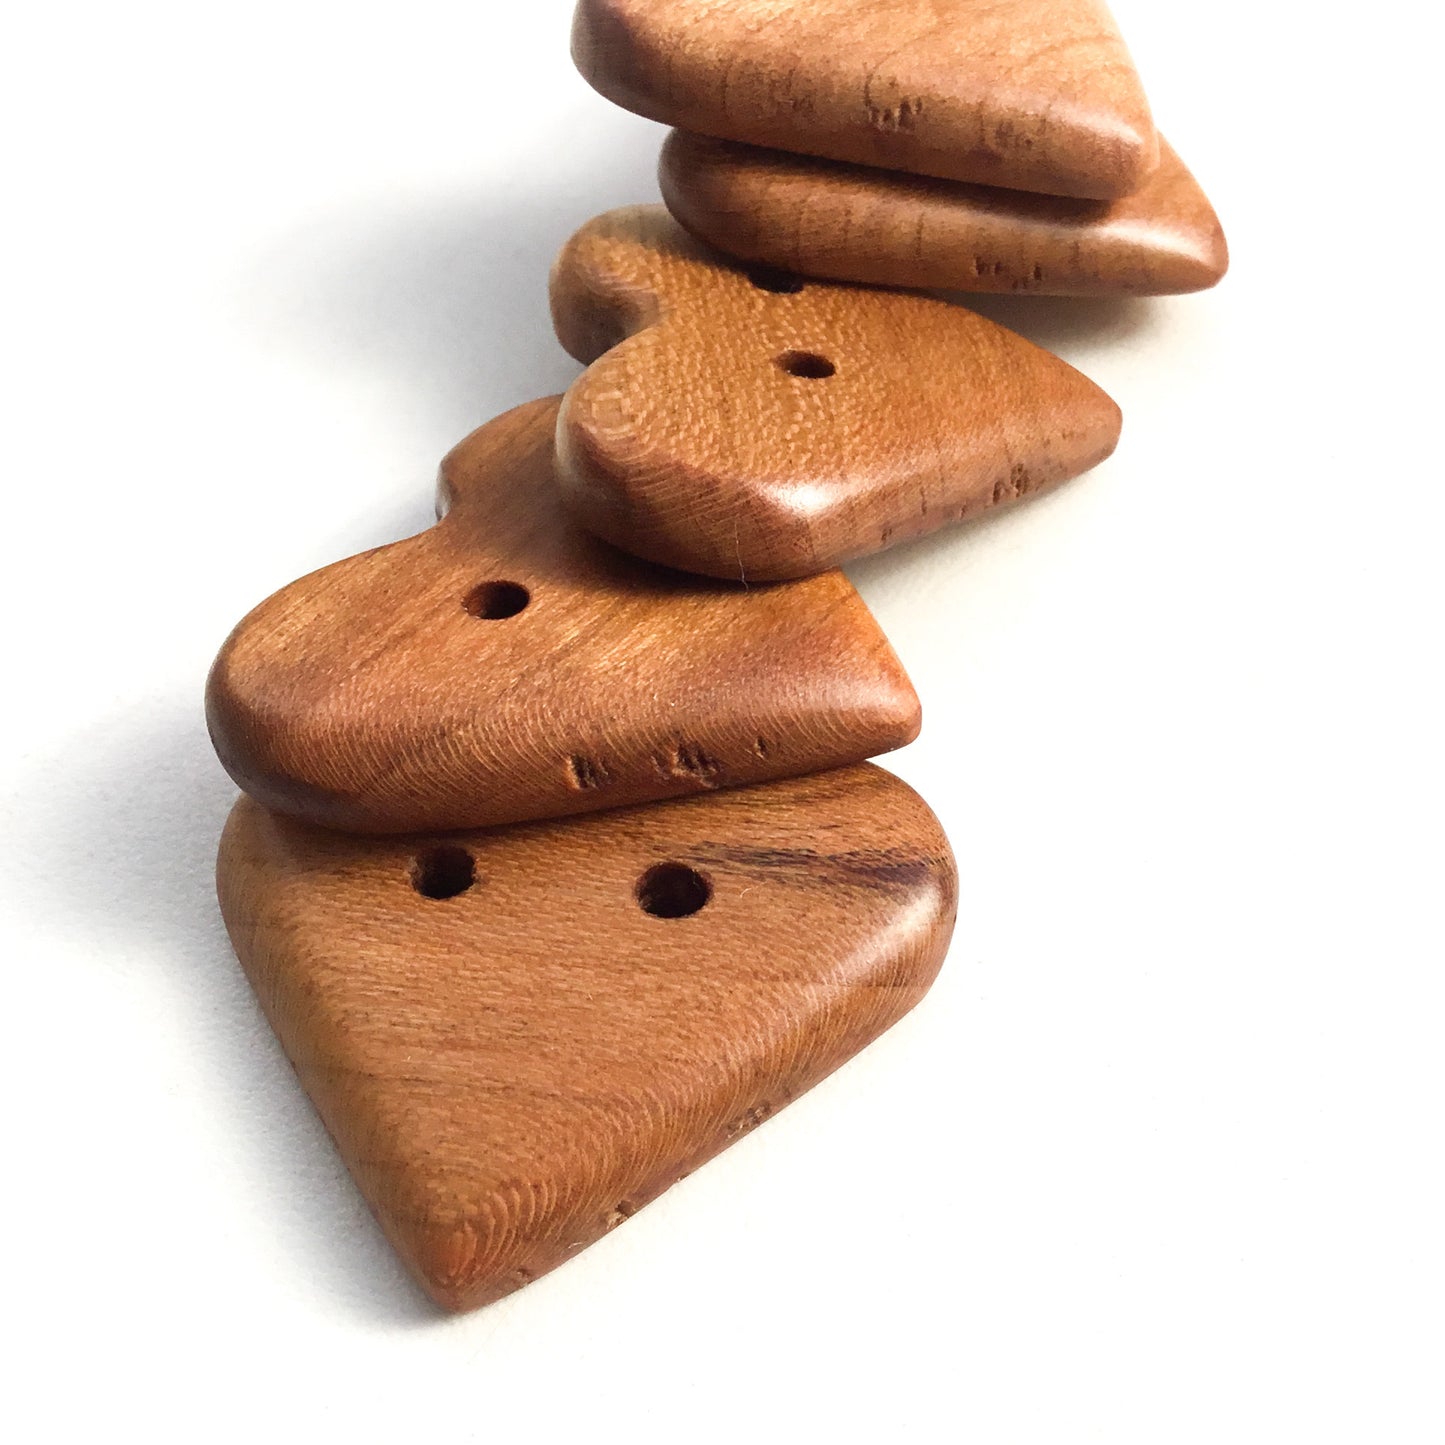 Cherry Wood Heart Buttons - 1-3/8"